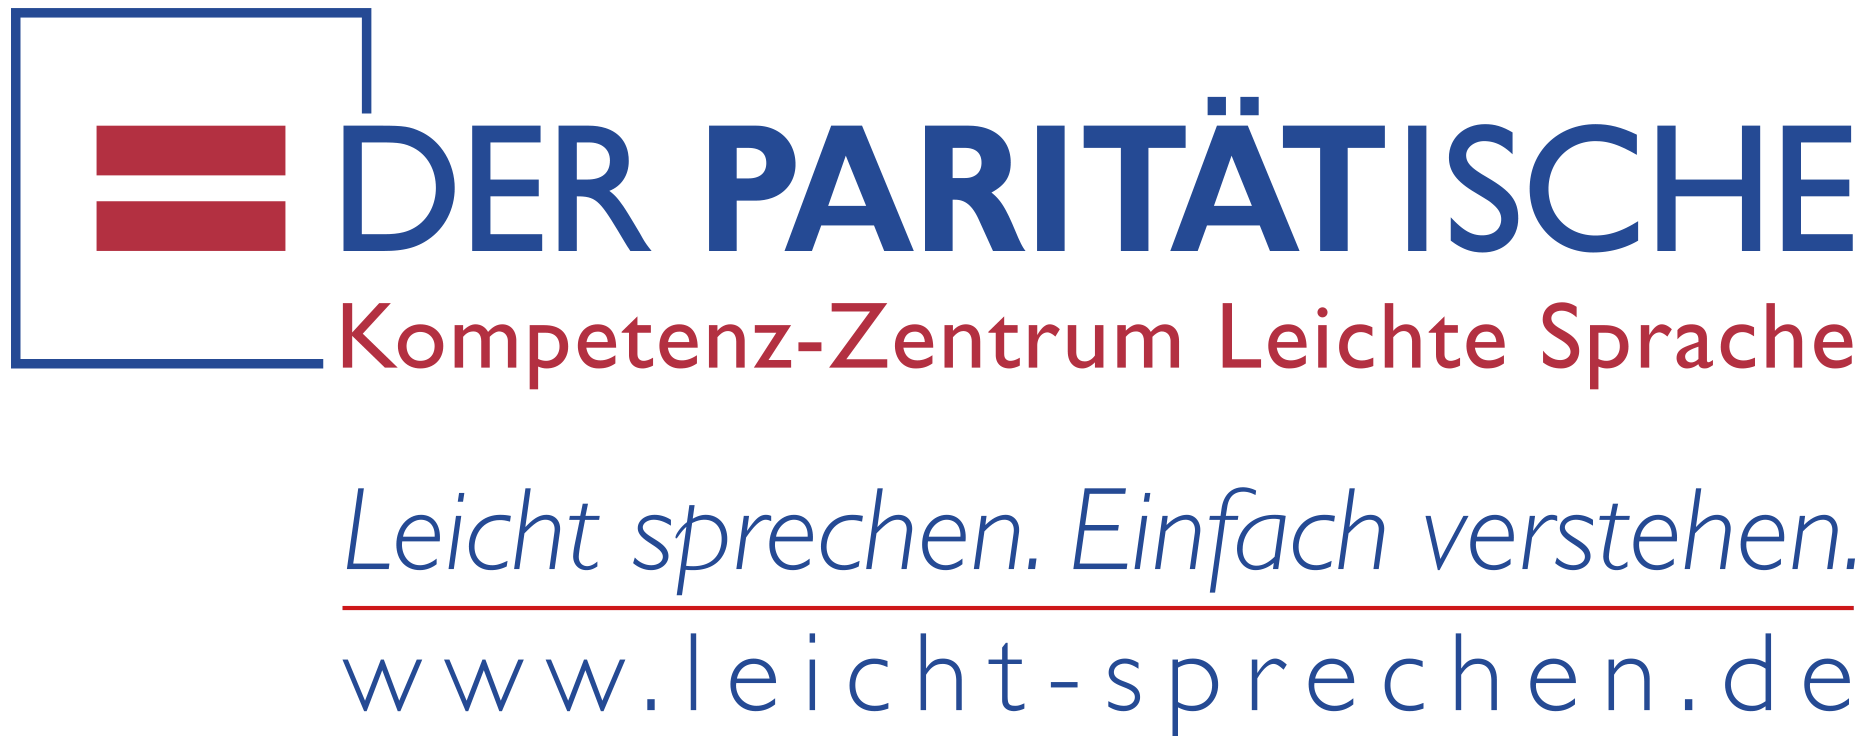 Logo Kompetenz-Zentrum Leichte Sprache Paritätisches Zentrum